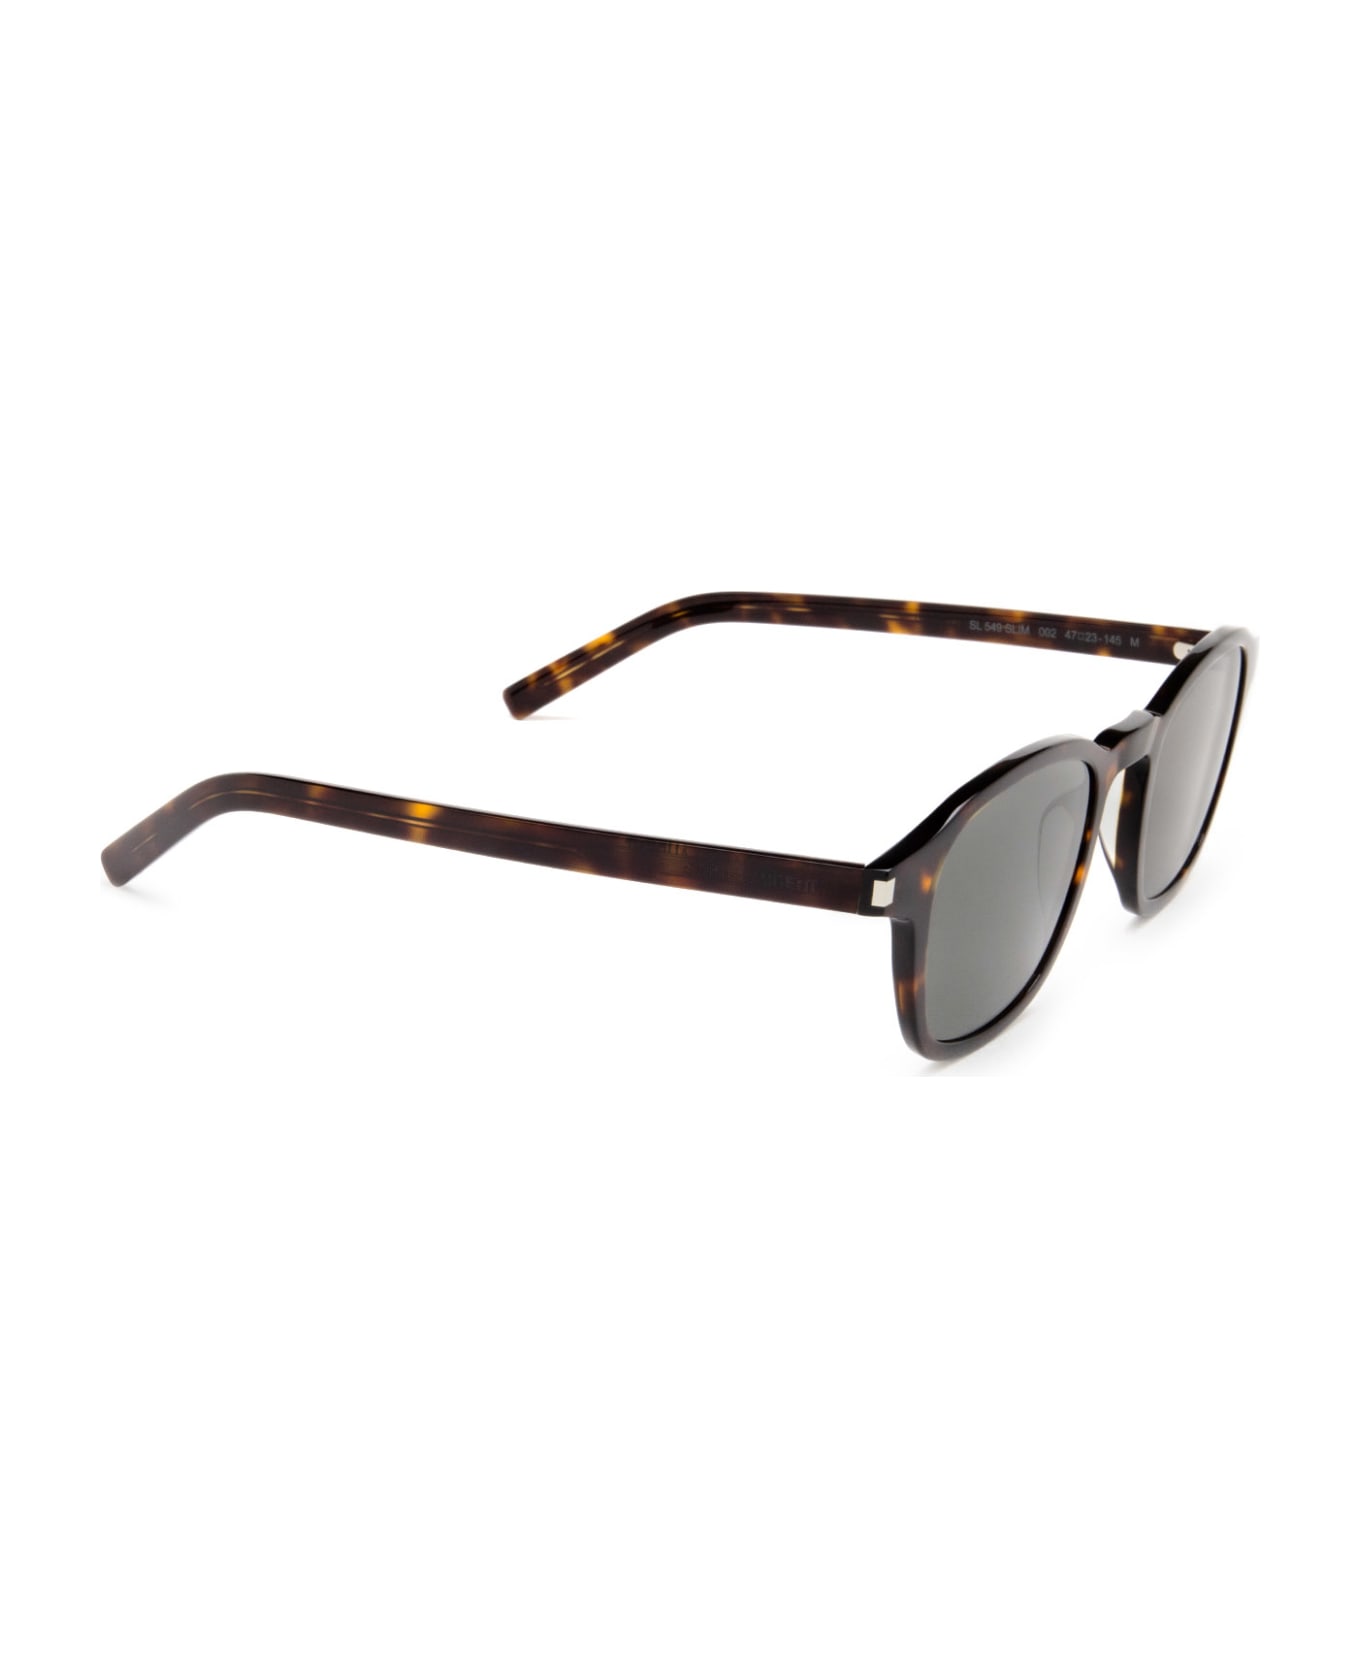 Saint Laurent Eyewear Sl 549 Slim Havana Sunglasses - Havana